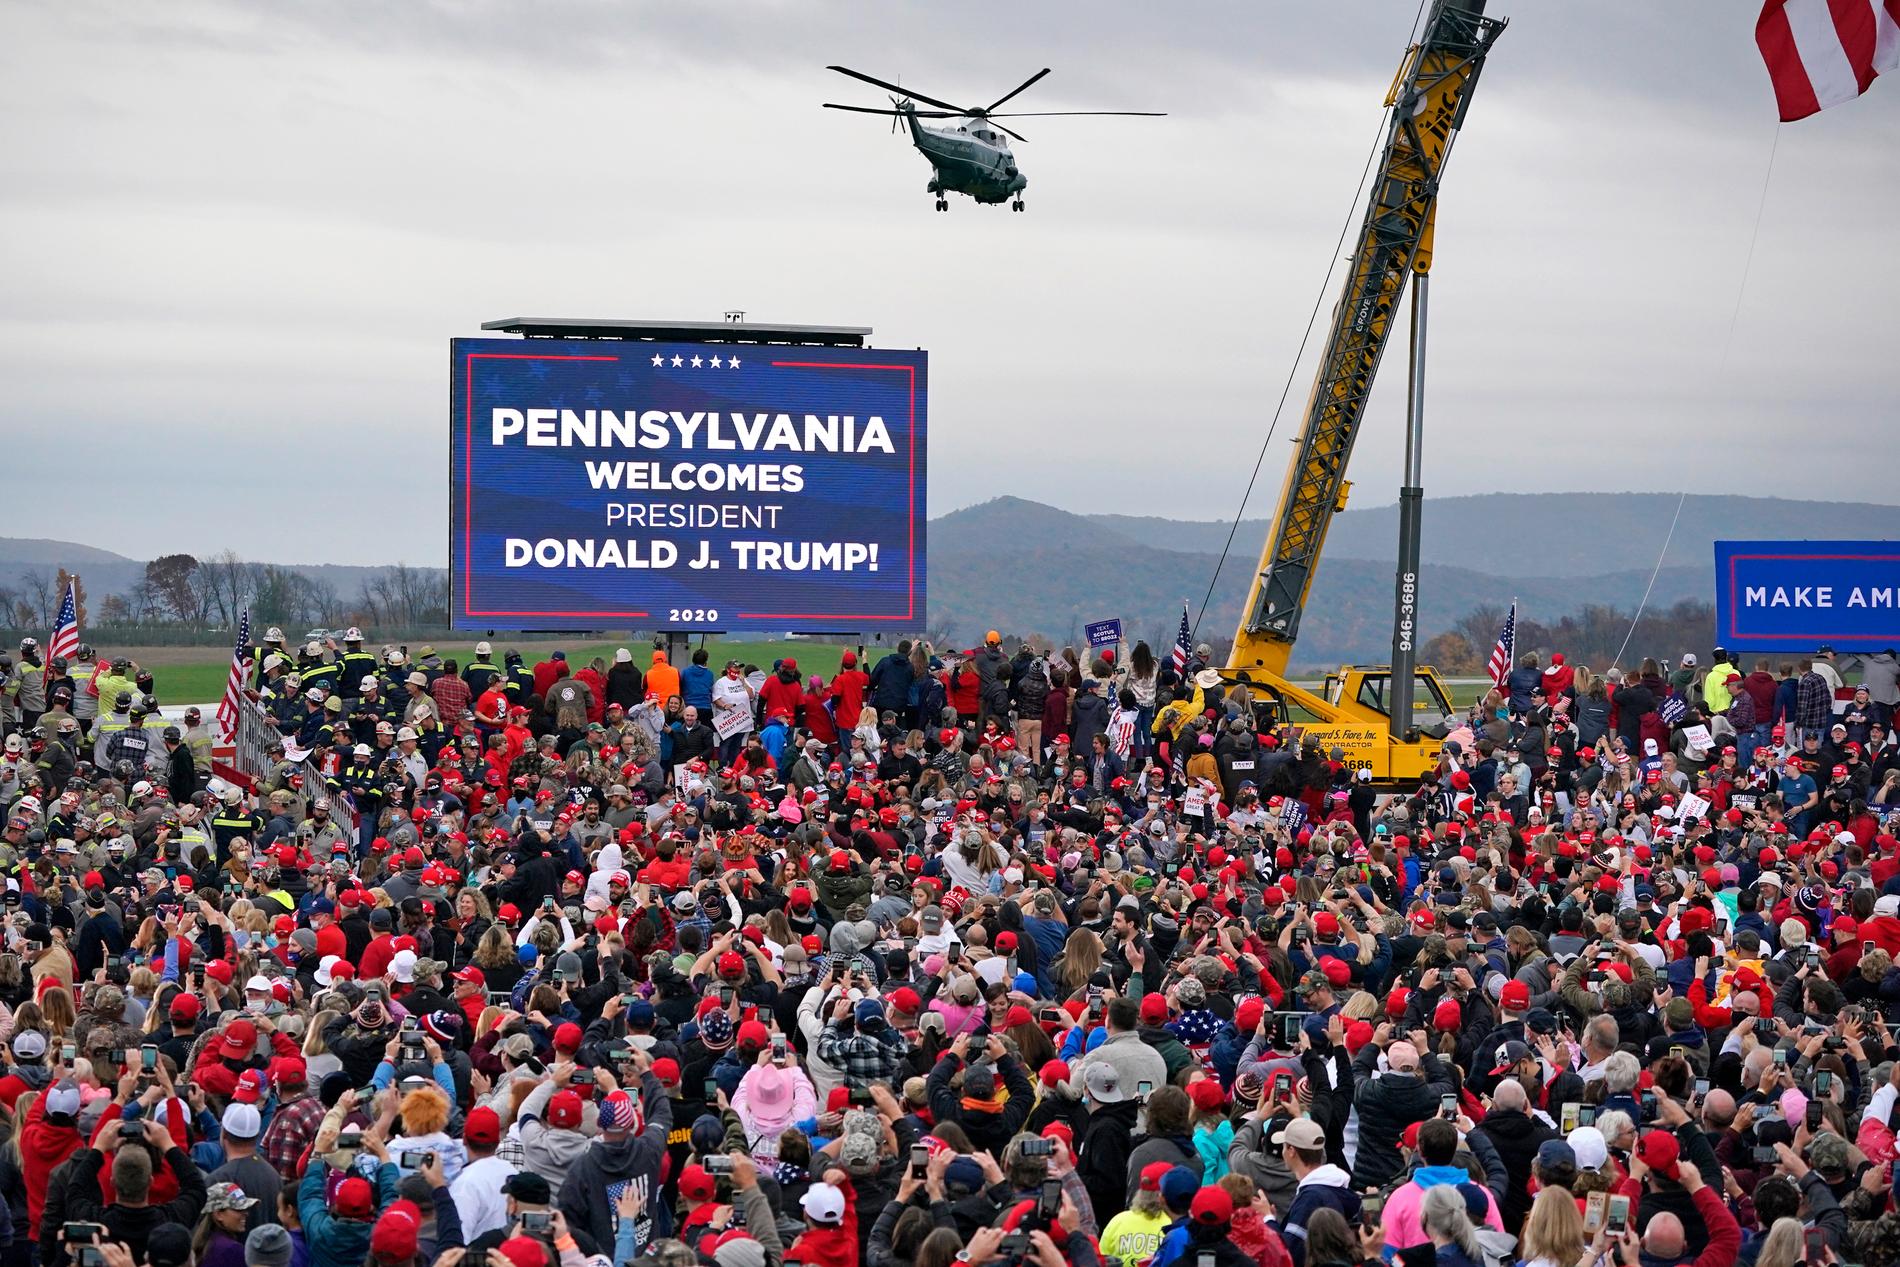 President Donald Trump tog helikoptern till ett valmöte i Martinsburg i Pennsylvania i måndags.